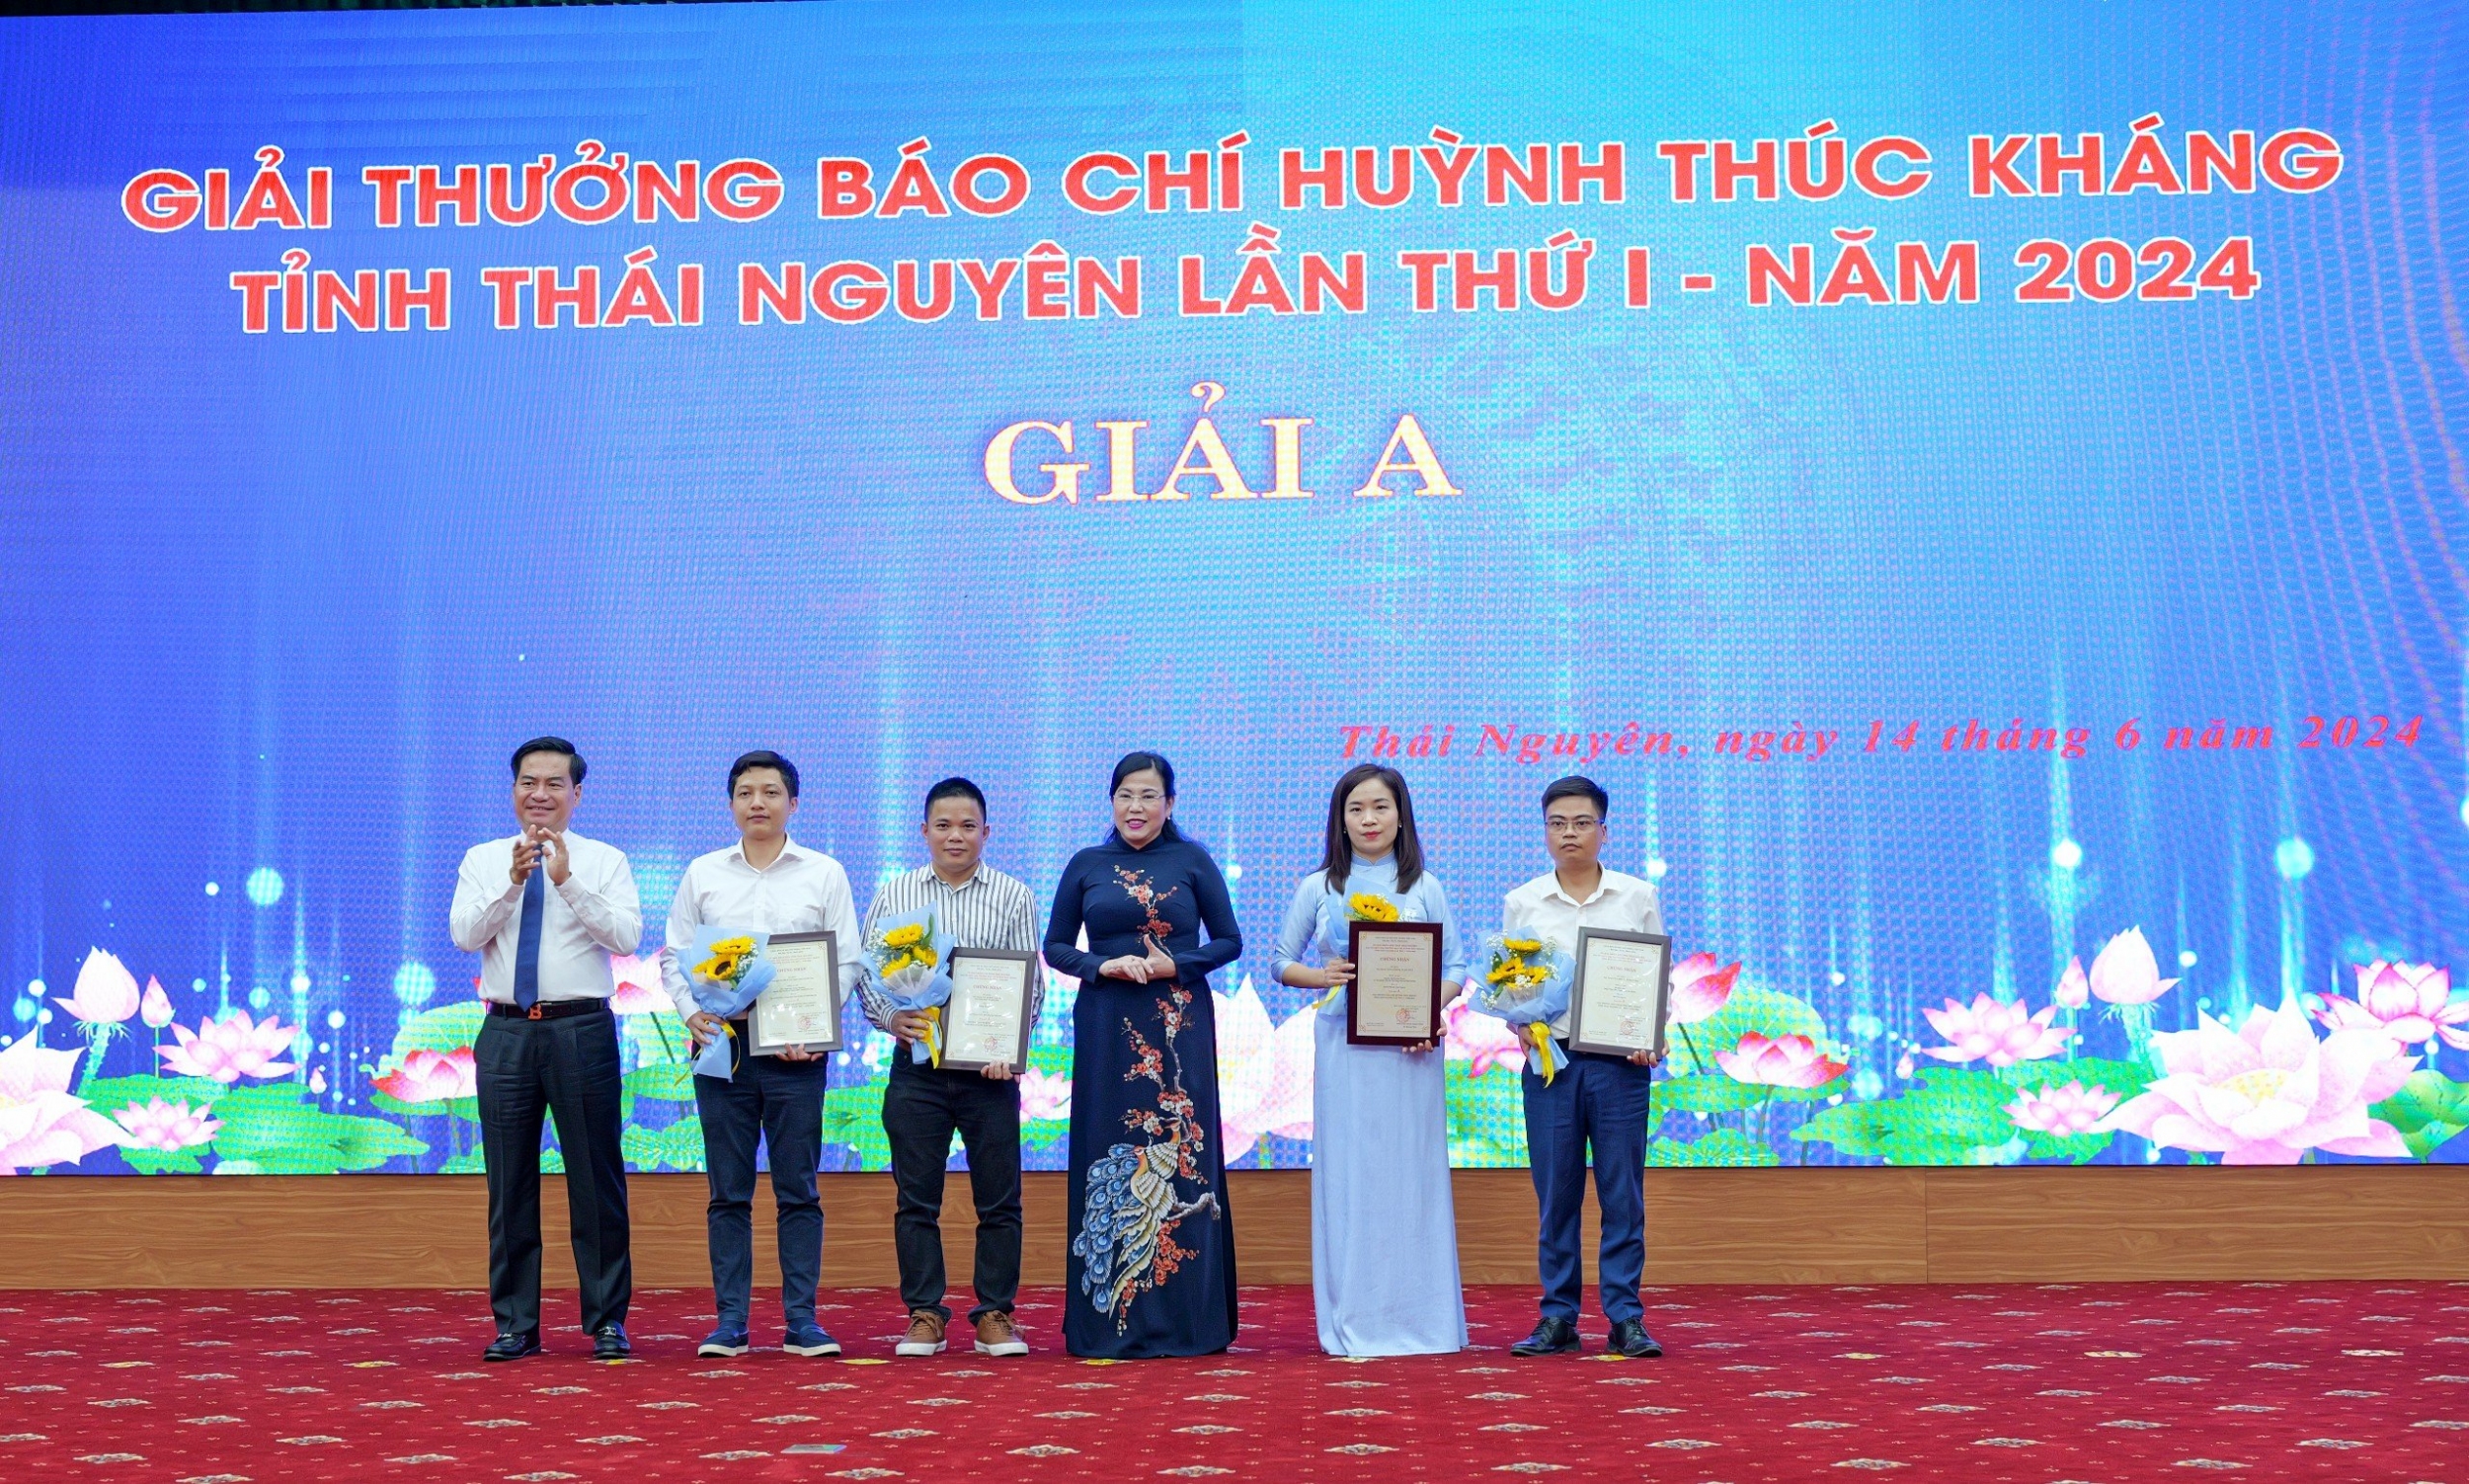 37 tác phẩm báo chí xuất sắc được trao Giải thưởng Báo chí Huỳnh Thúc Kháng tỉnh Thái Nguyên lần thứ I - năm 2024